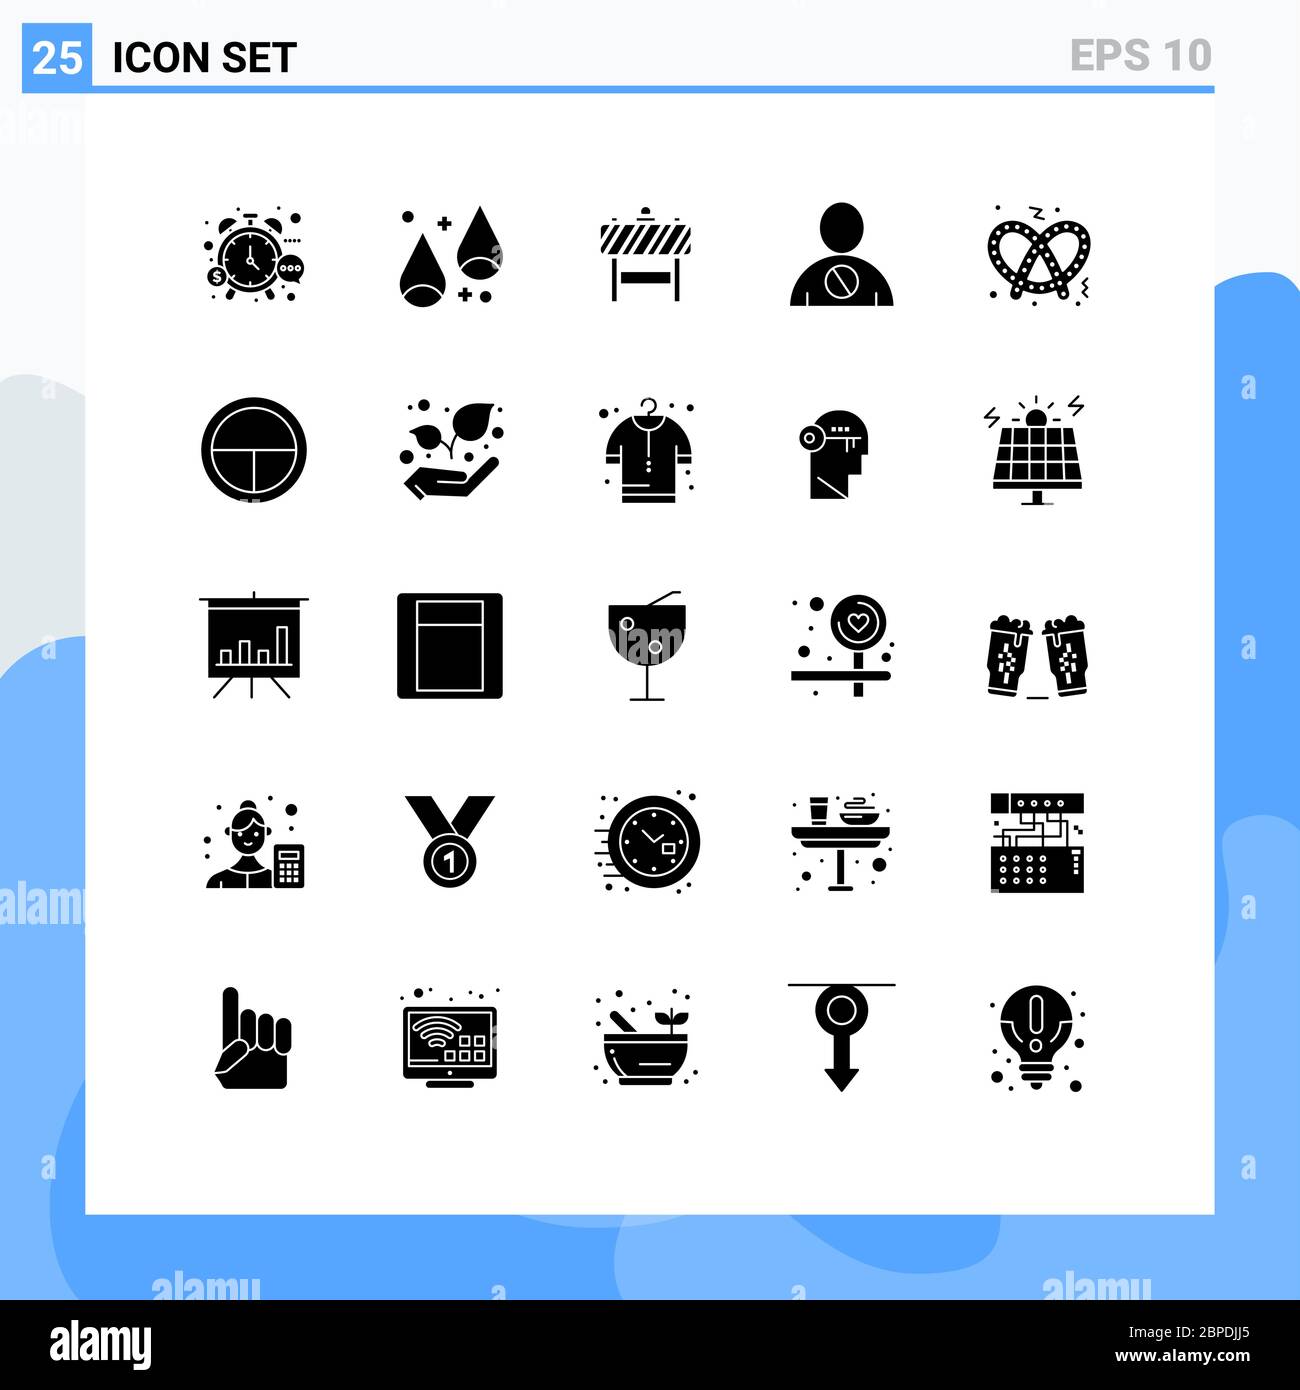 25 interfaccia utente Solid Glyph Pack di segni e simboli moderni di elementi di disegno vettoriale editabili umani, corporei, di ringraziamento, bloccati, bloccanti Illustrazione Vettoriale